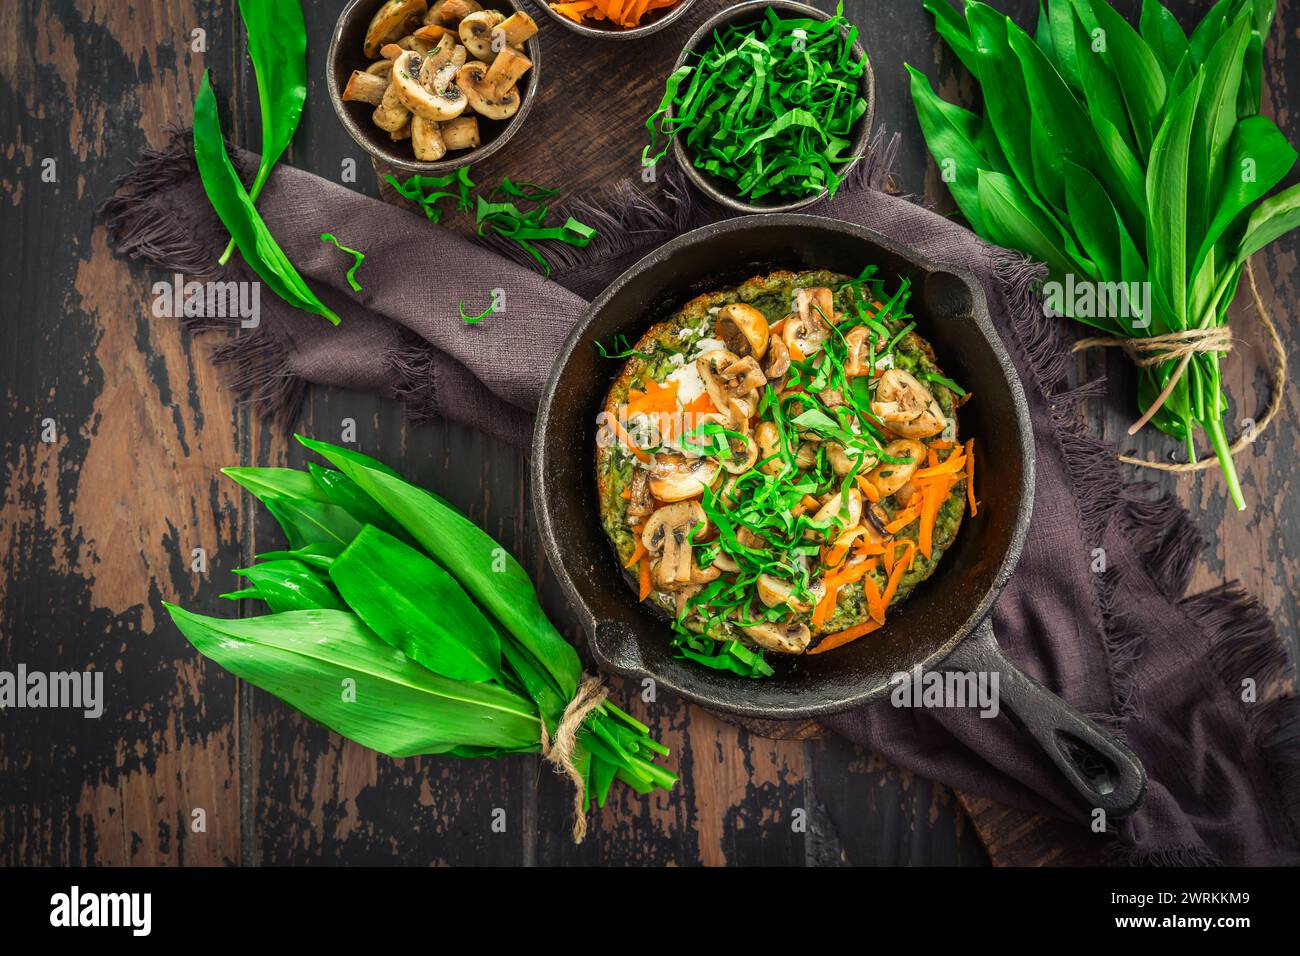 Quiche végétarienne ou crêpe cuite au four avec ramson, carottes et champignons. Banque D'Images